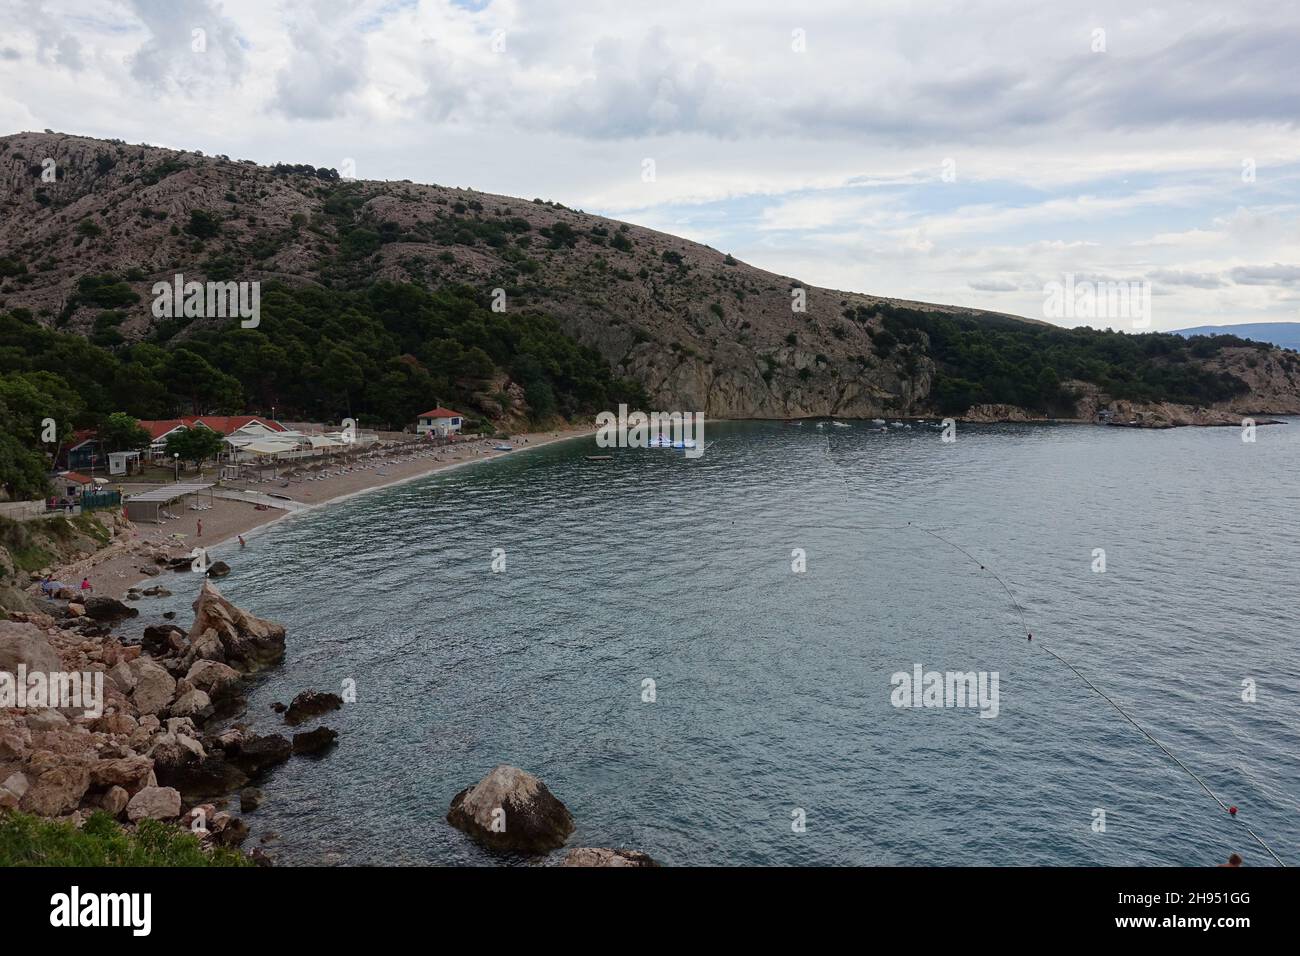 costa mediterranea in istria croazia - immagini uniche dell'estate 2021 Foto Stock